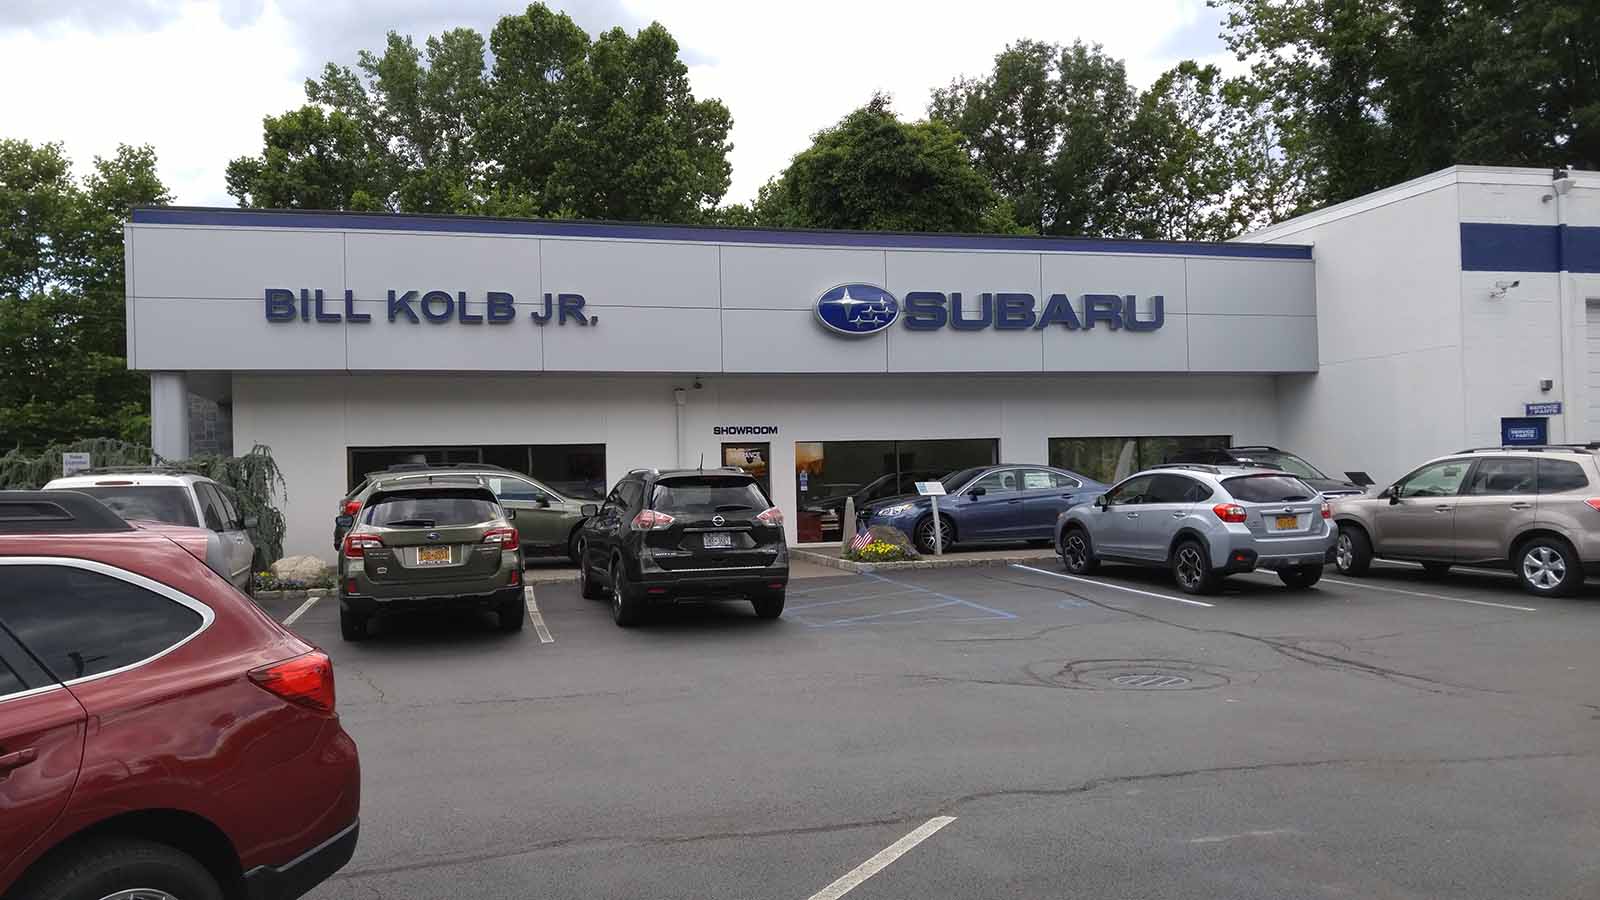 Bill Kolb, Jr Subaru